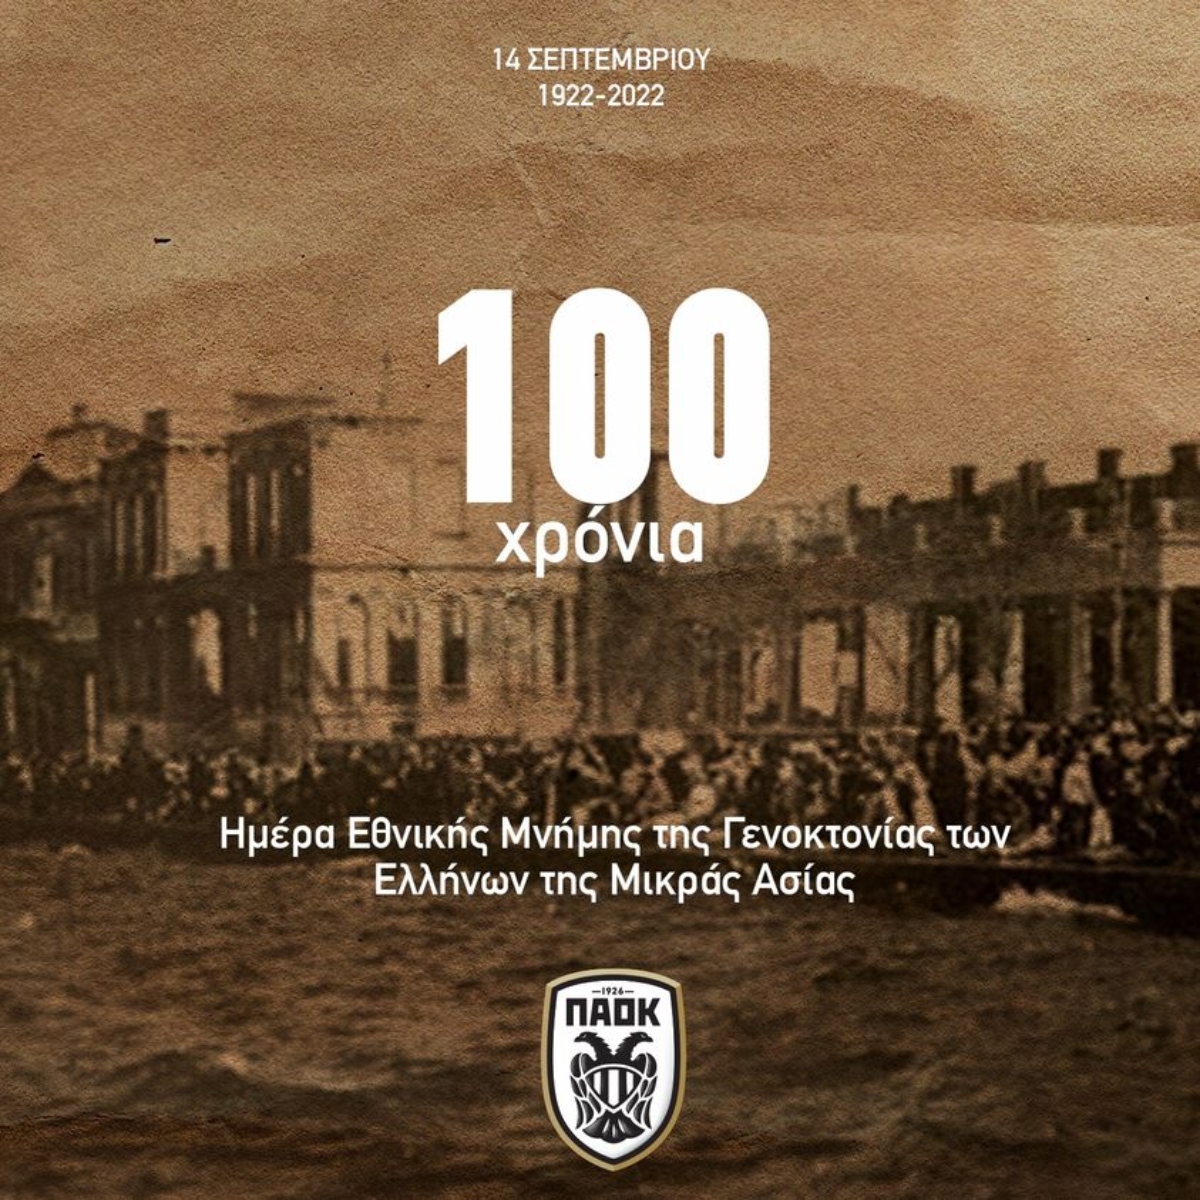 ΠΑΕ ΠΑΟΚ για τη Μικρασιατική Καταστροφή: «100 χρόνια μνήμης και τιμής» (ΦΩΤΟ)